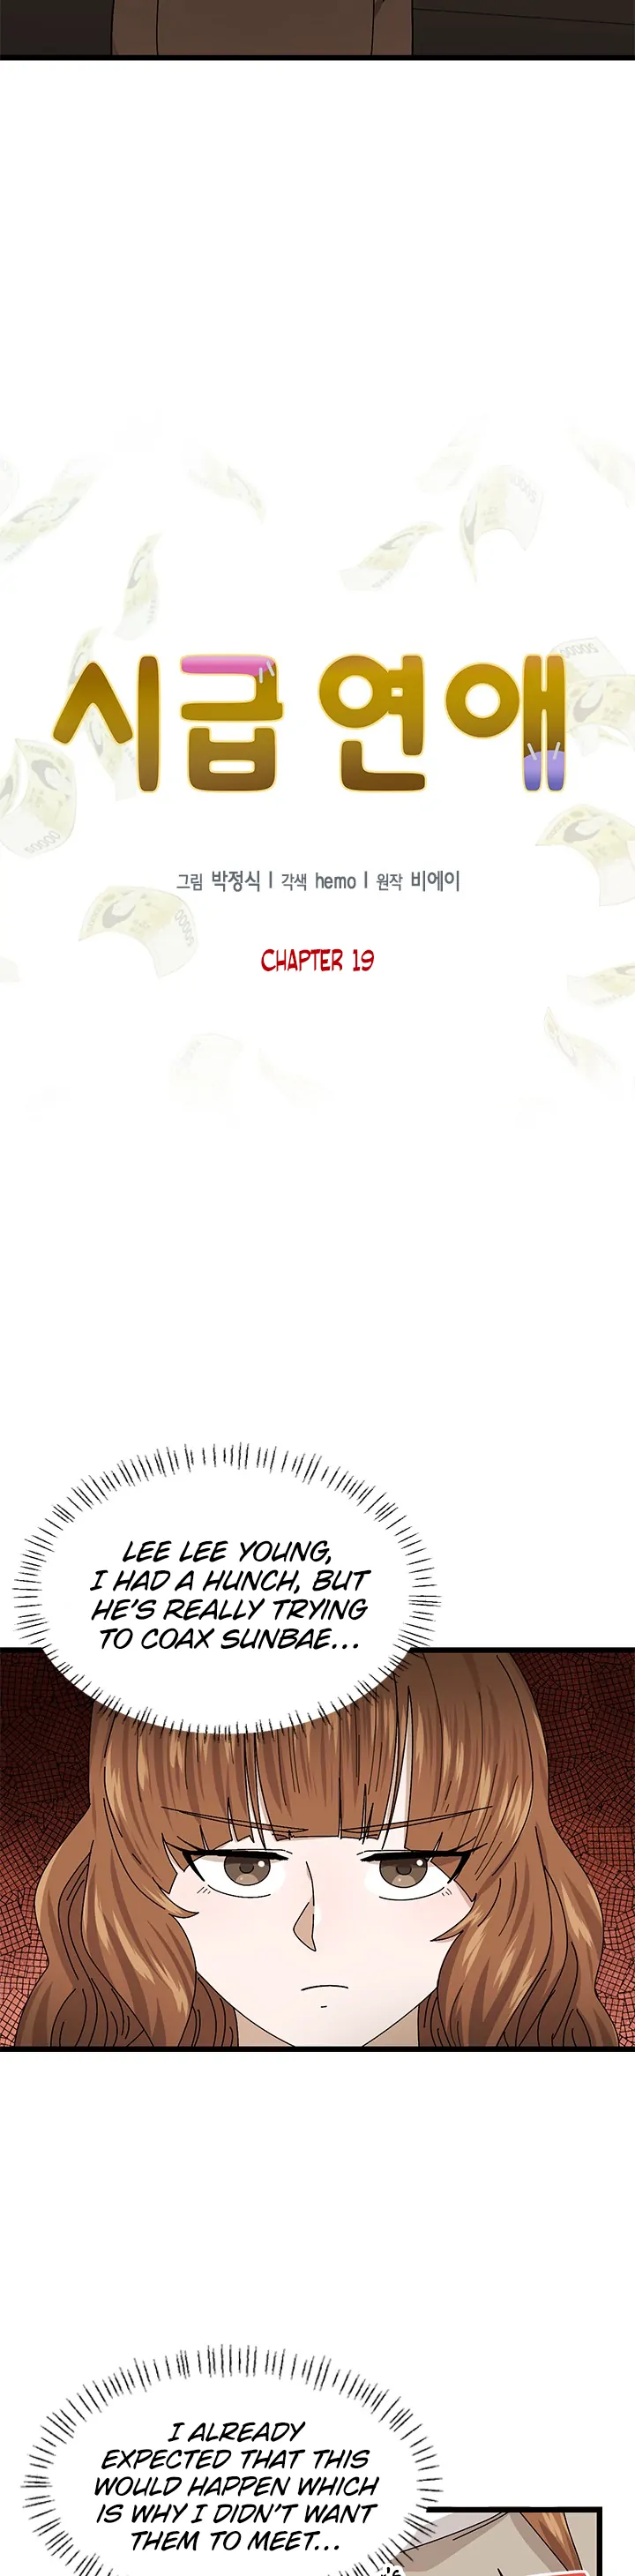 Sigeup Yeonae chapter 19